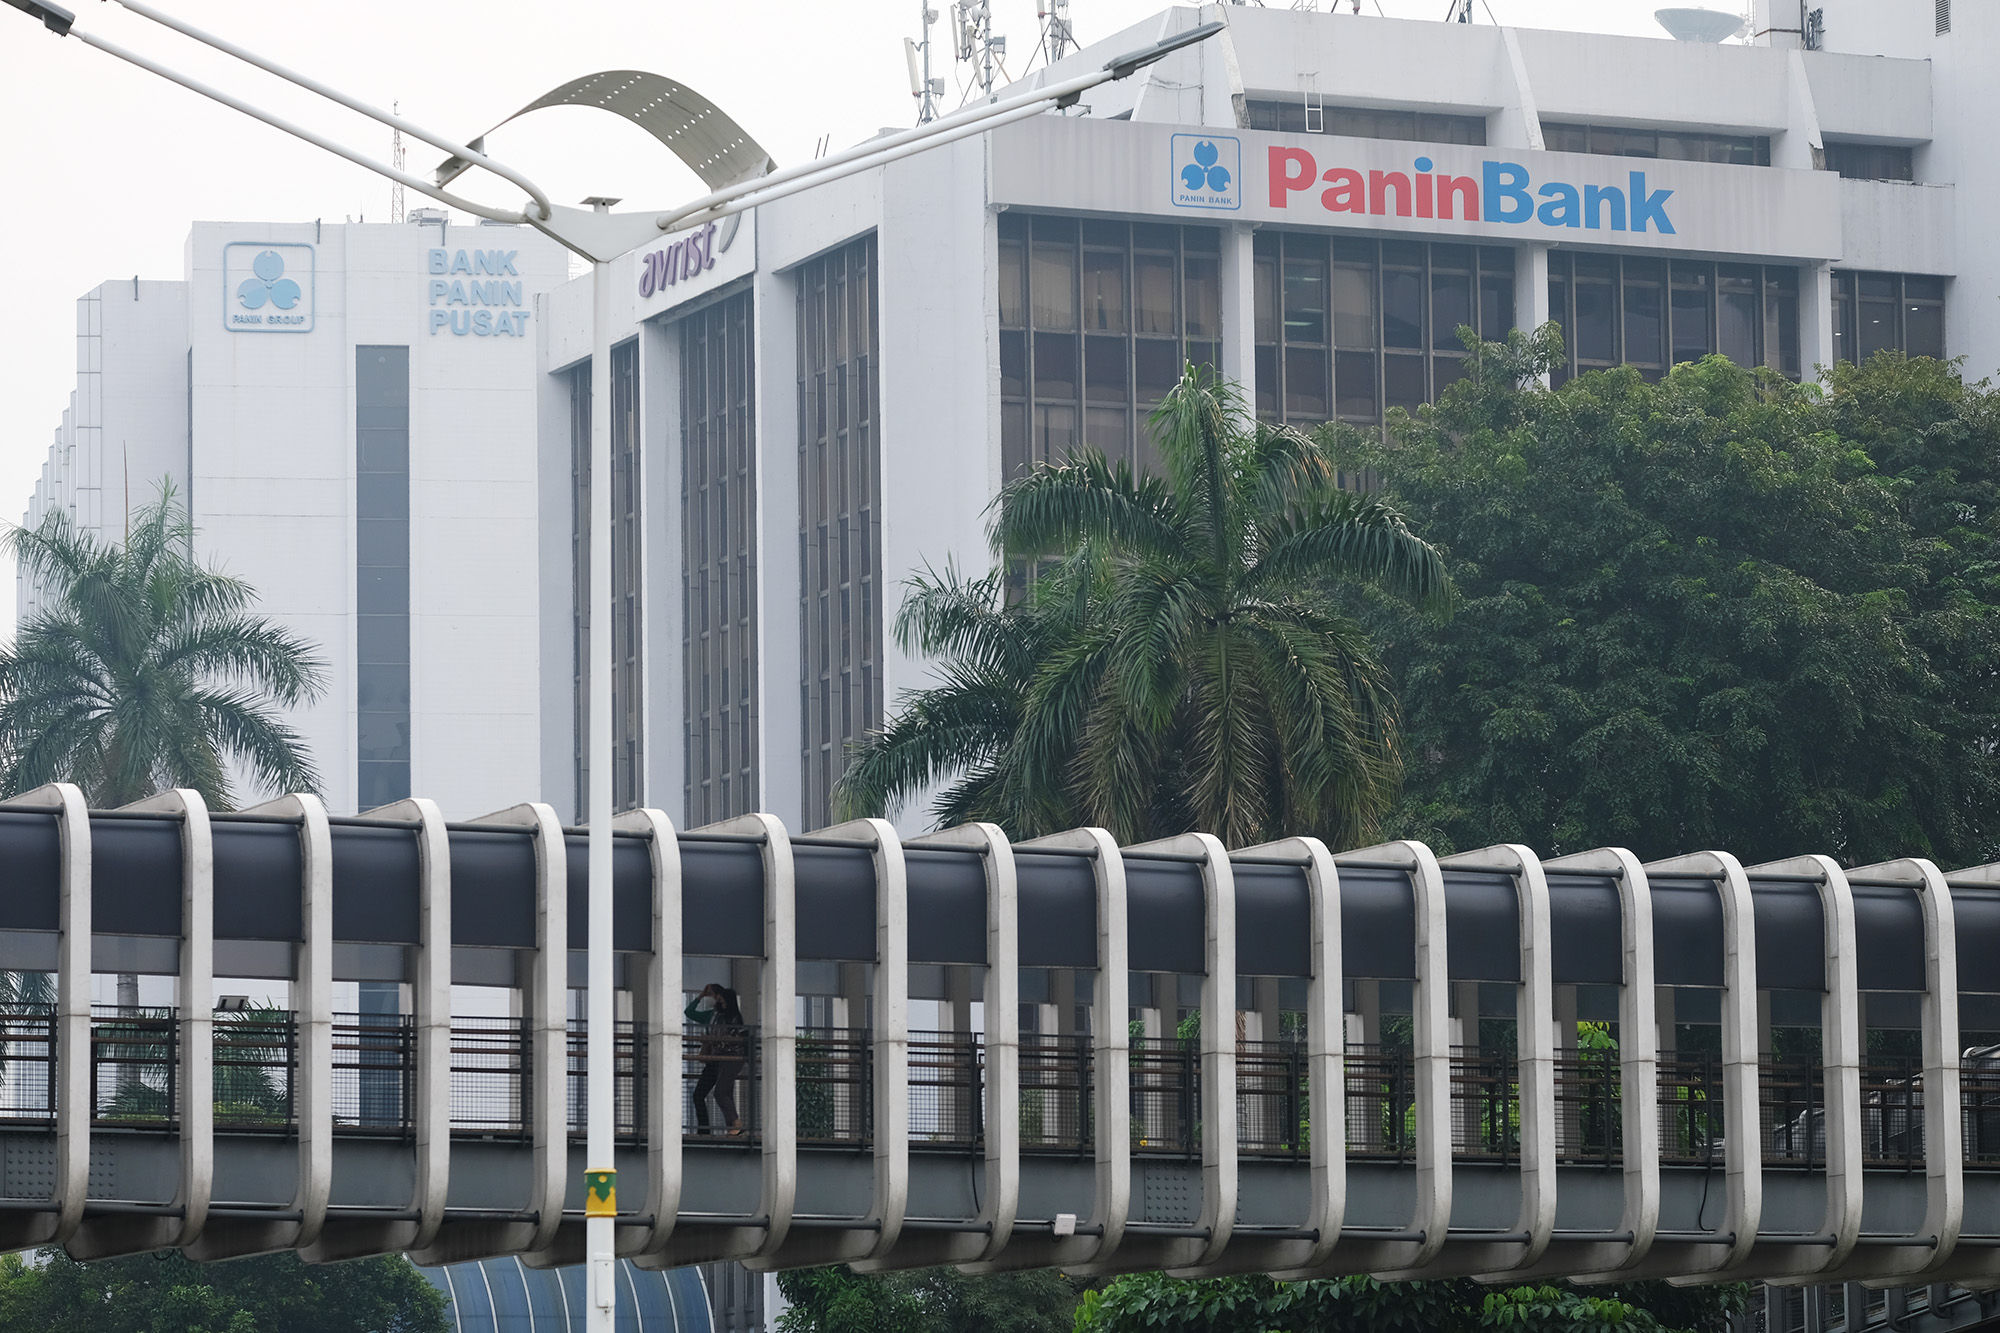 Kantor Pusat Panin Bank di kawasan Senayan, Jakarta. Foto: Ismail Pohan/TrenAsia